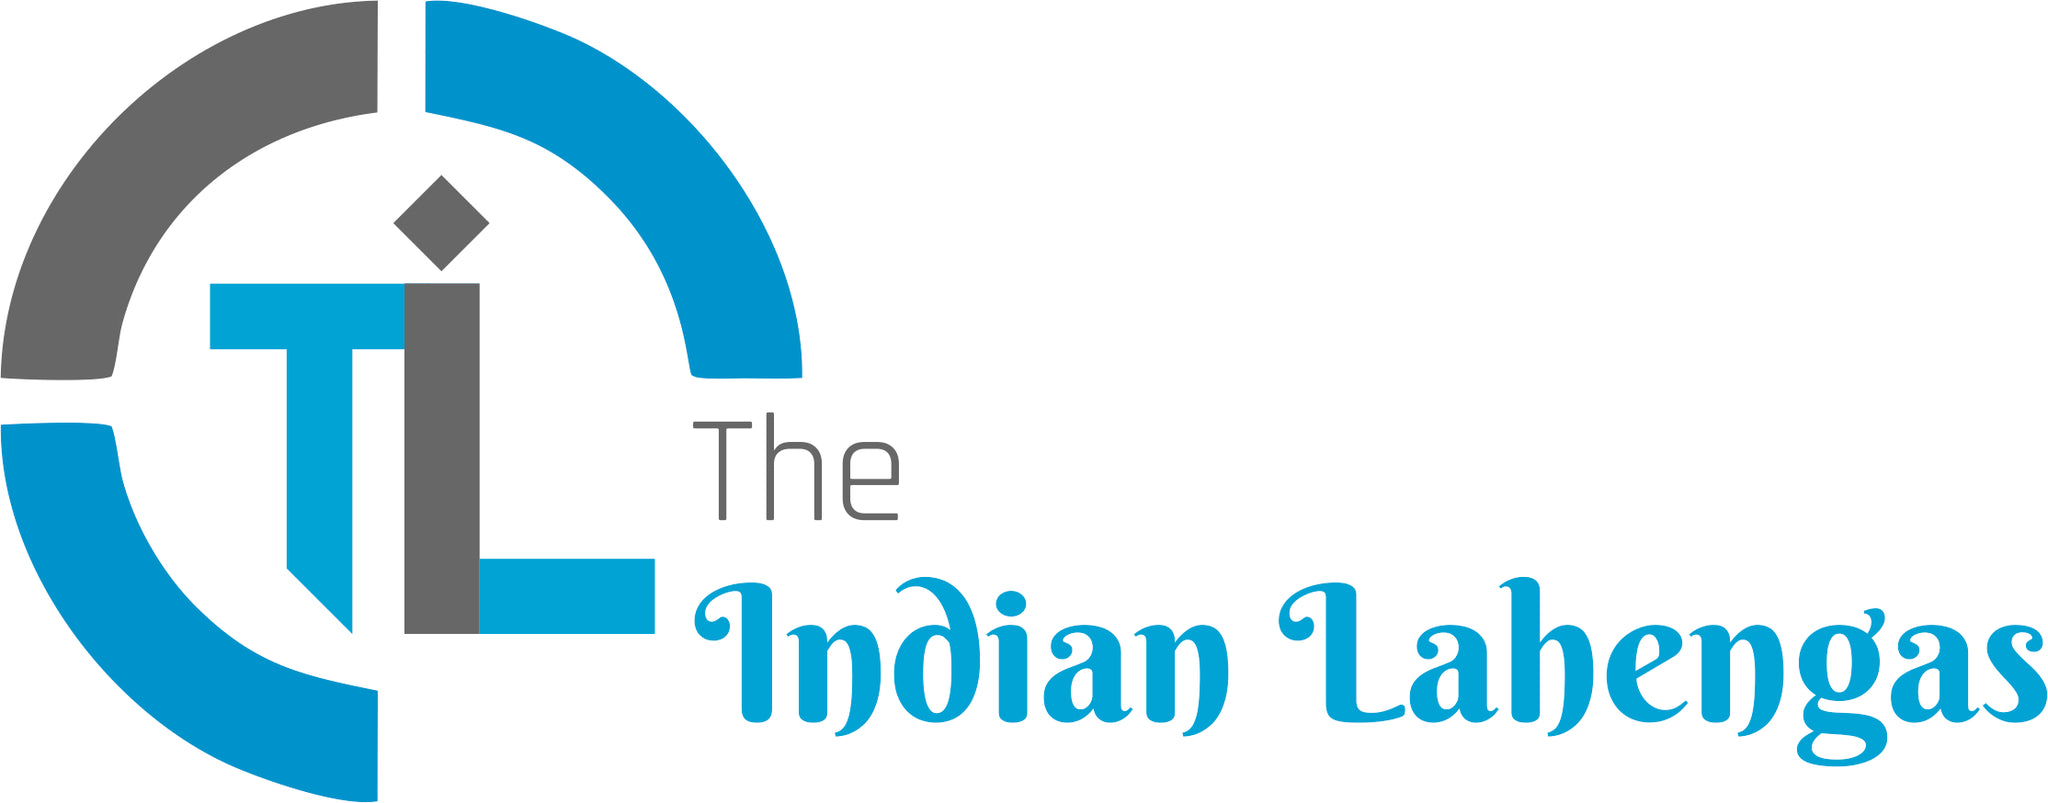 The Indian Lehenga